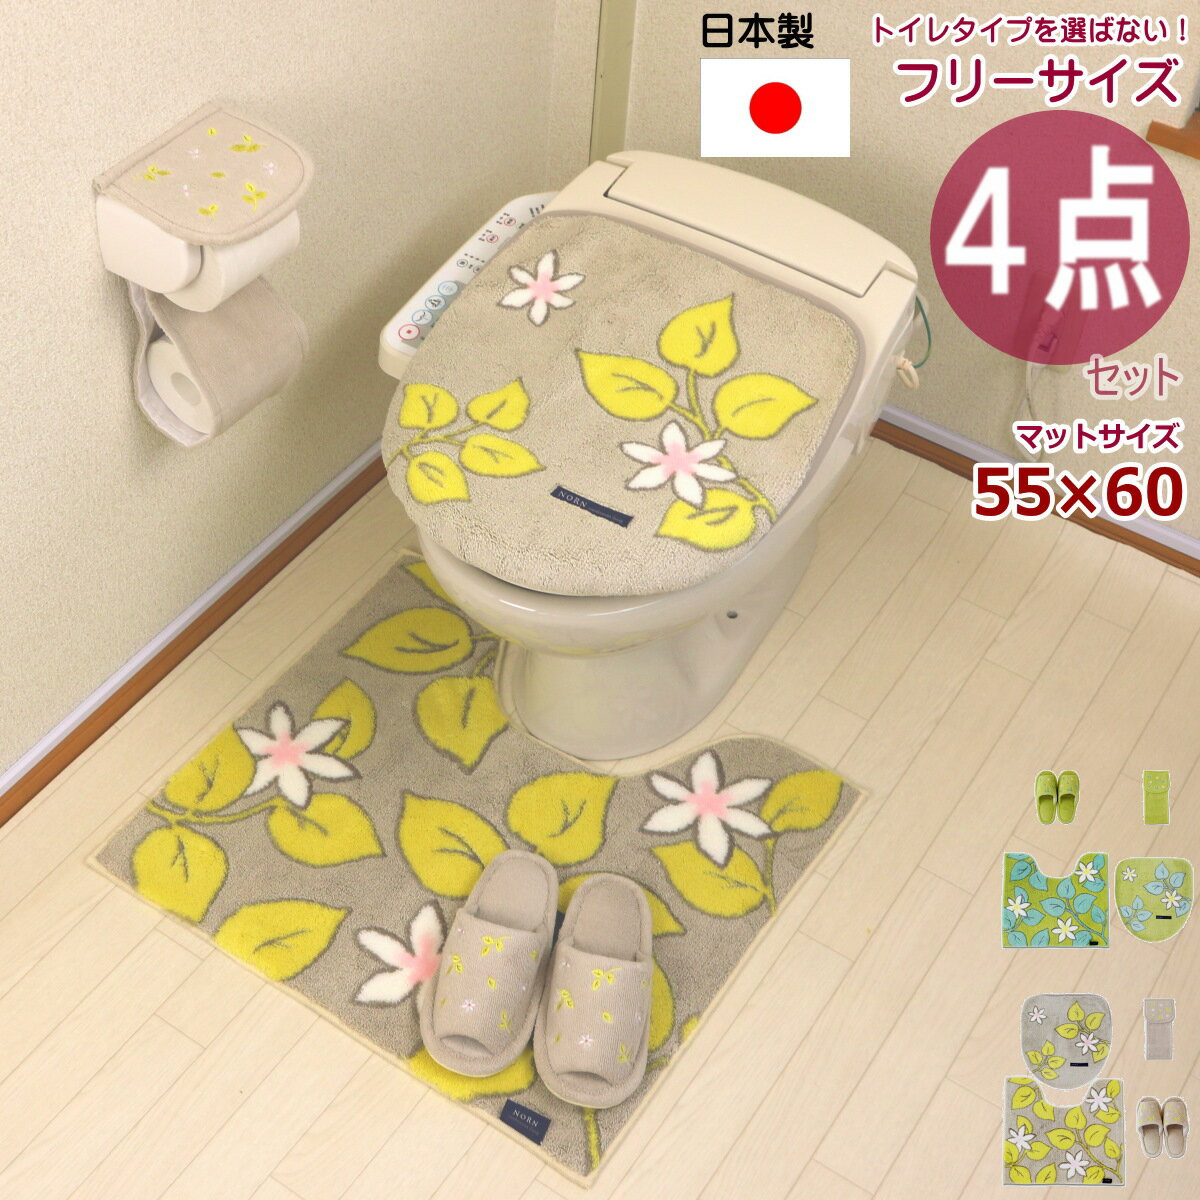 トイレマット 4点 セット 日本製 オカ ノル...の紹介画像2